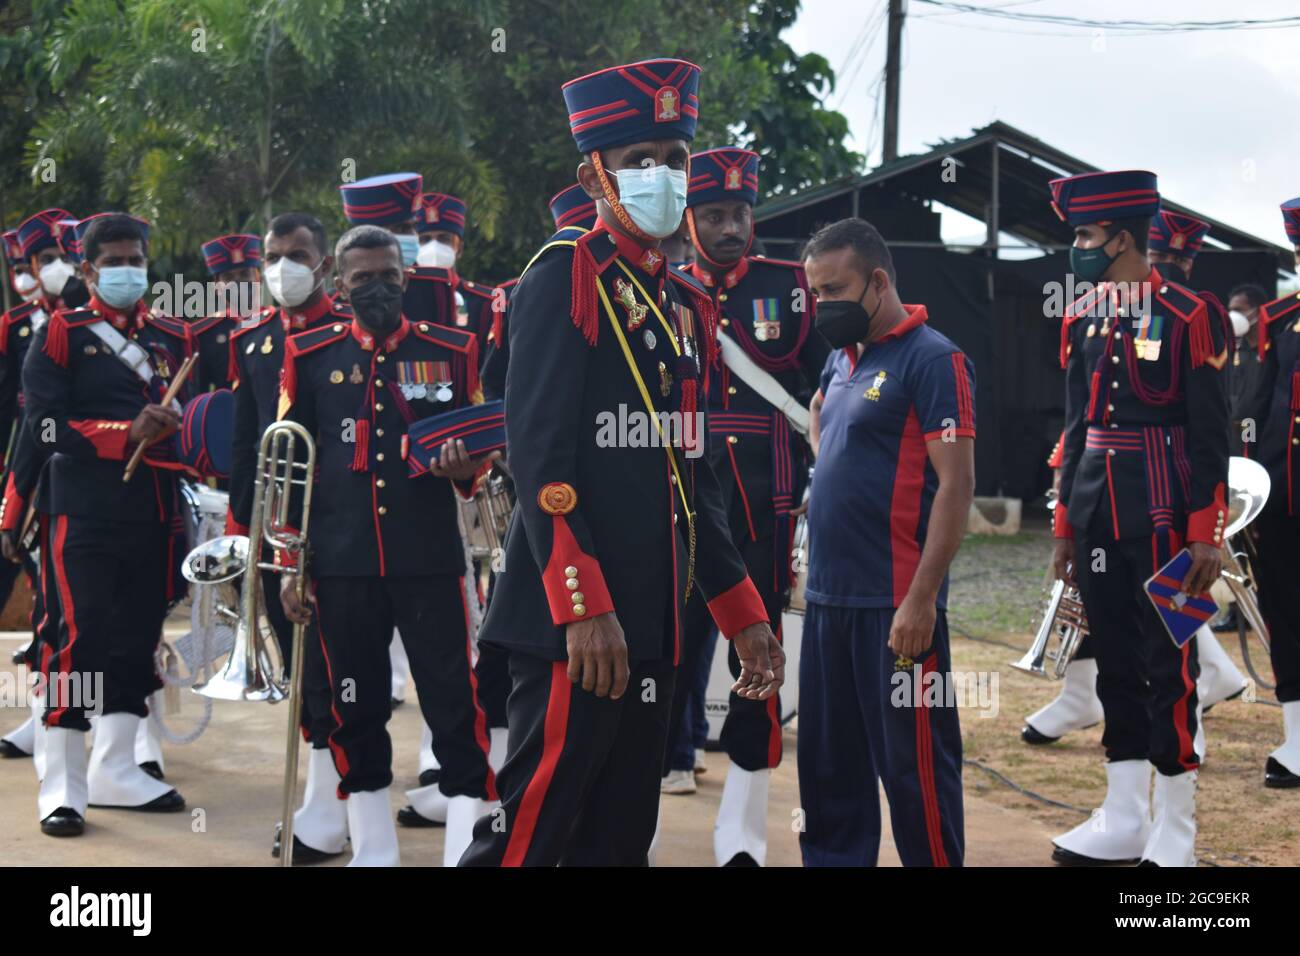 L'Armée de Sri Lanka se prépare personnellement à une cérémonie d'ouverture d'un événement sportif. Terrain de cricket de l'ordonnance de l'armée. Dombagode. Sri Lanka. Banque D'Images